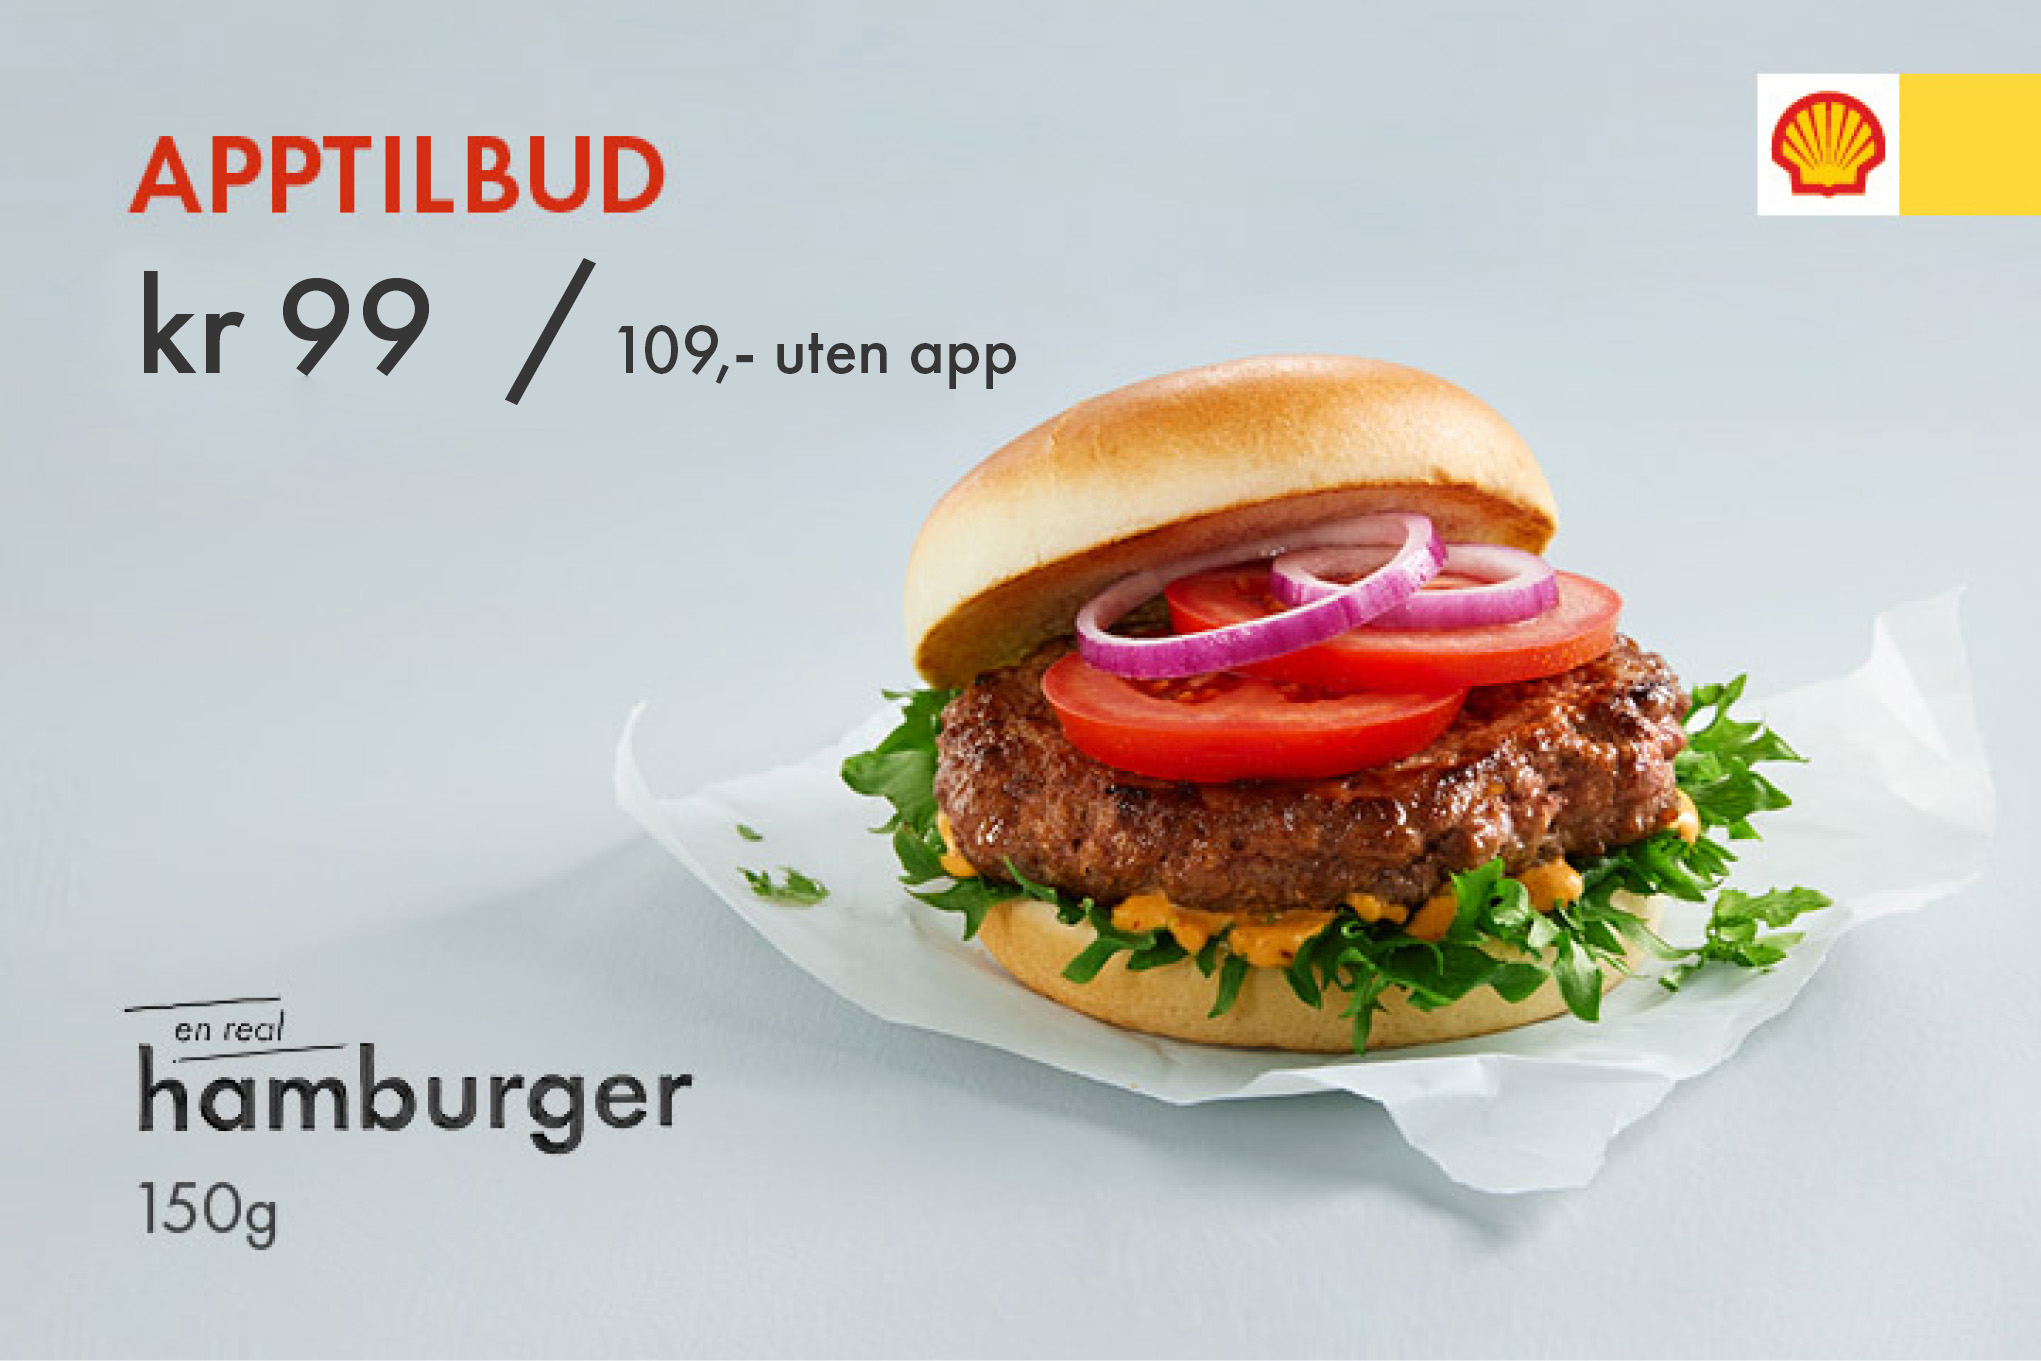 Prøv vår hamburger med Angus-kjøtt. Enda saftigere og mer smakfull